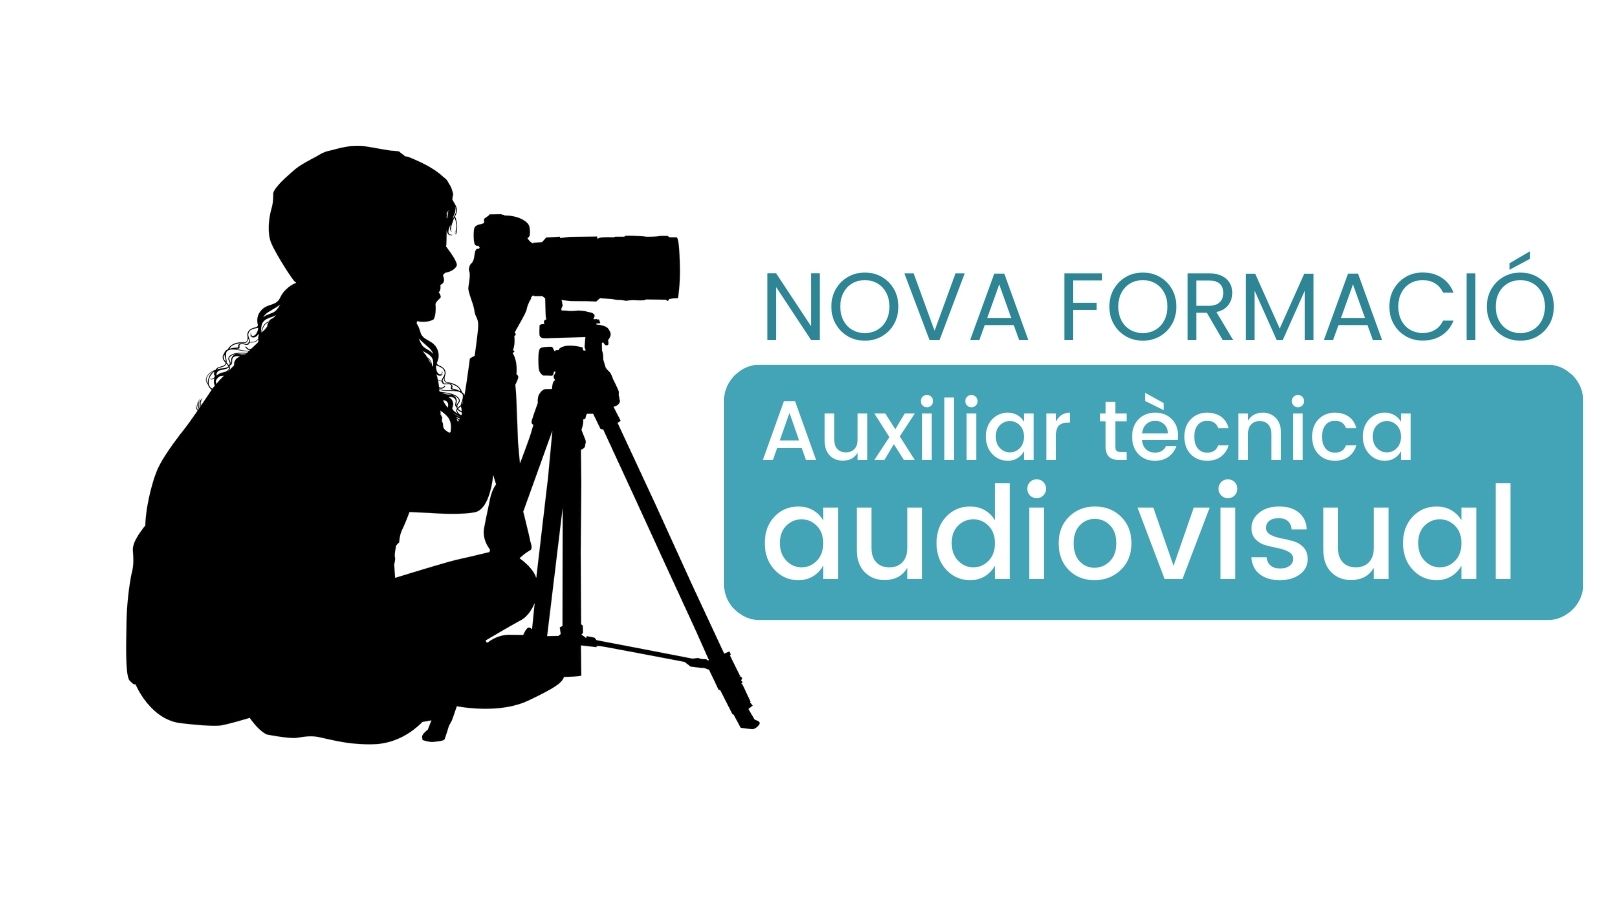 Aquesta pot ser la teva oportunitat: oferim formació professional en auxiliar tècnica audiovisual